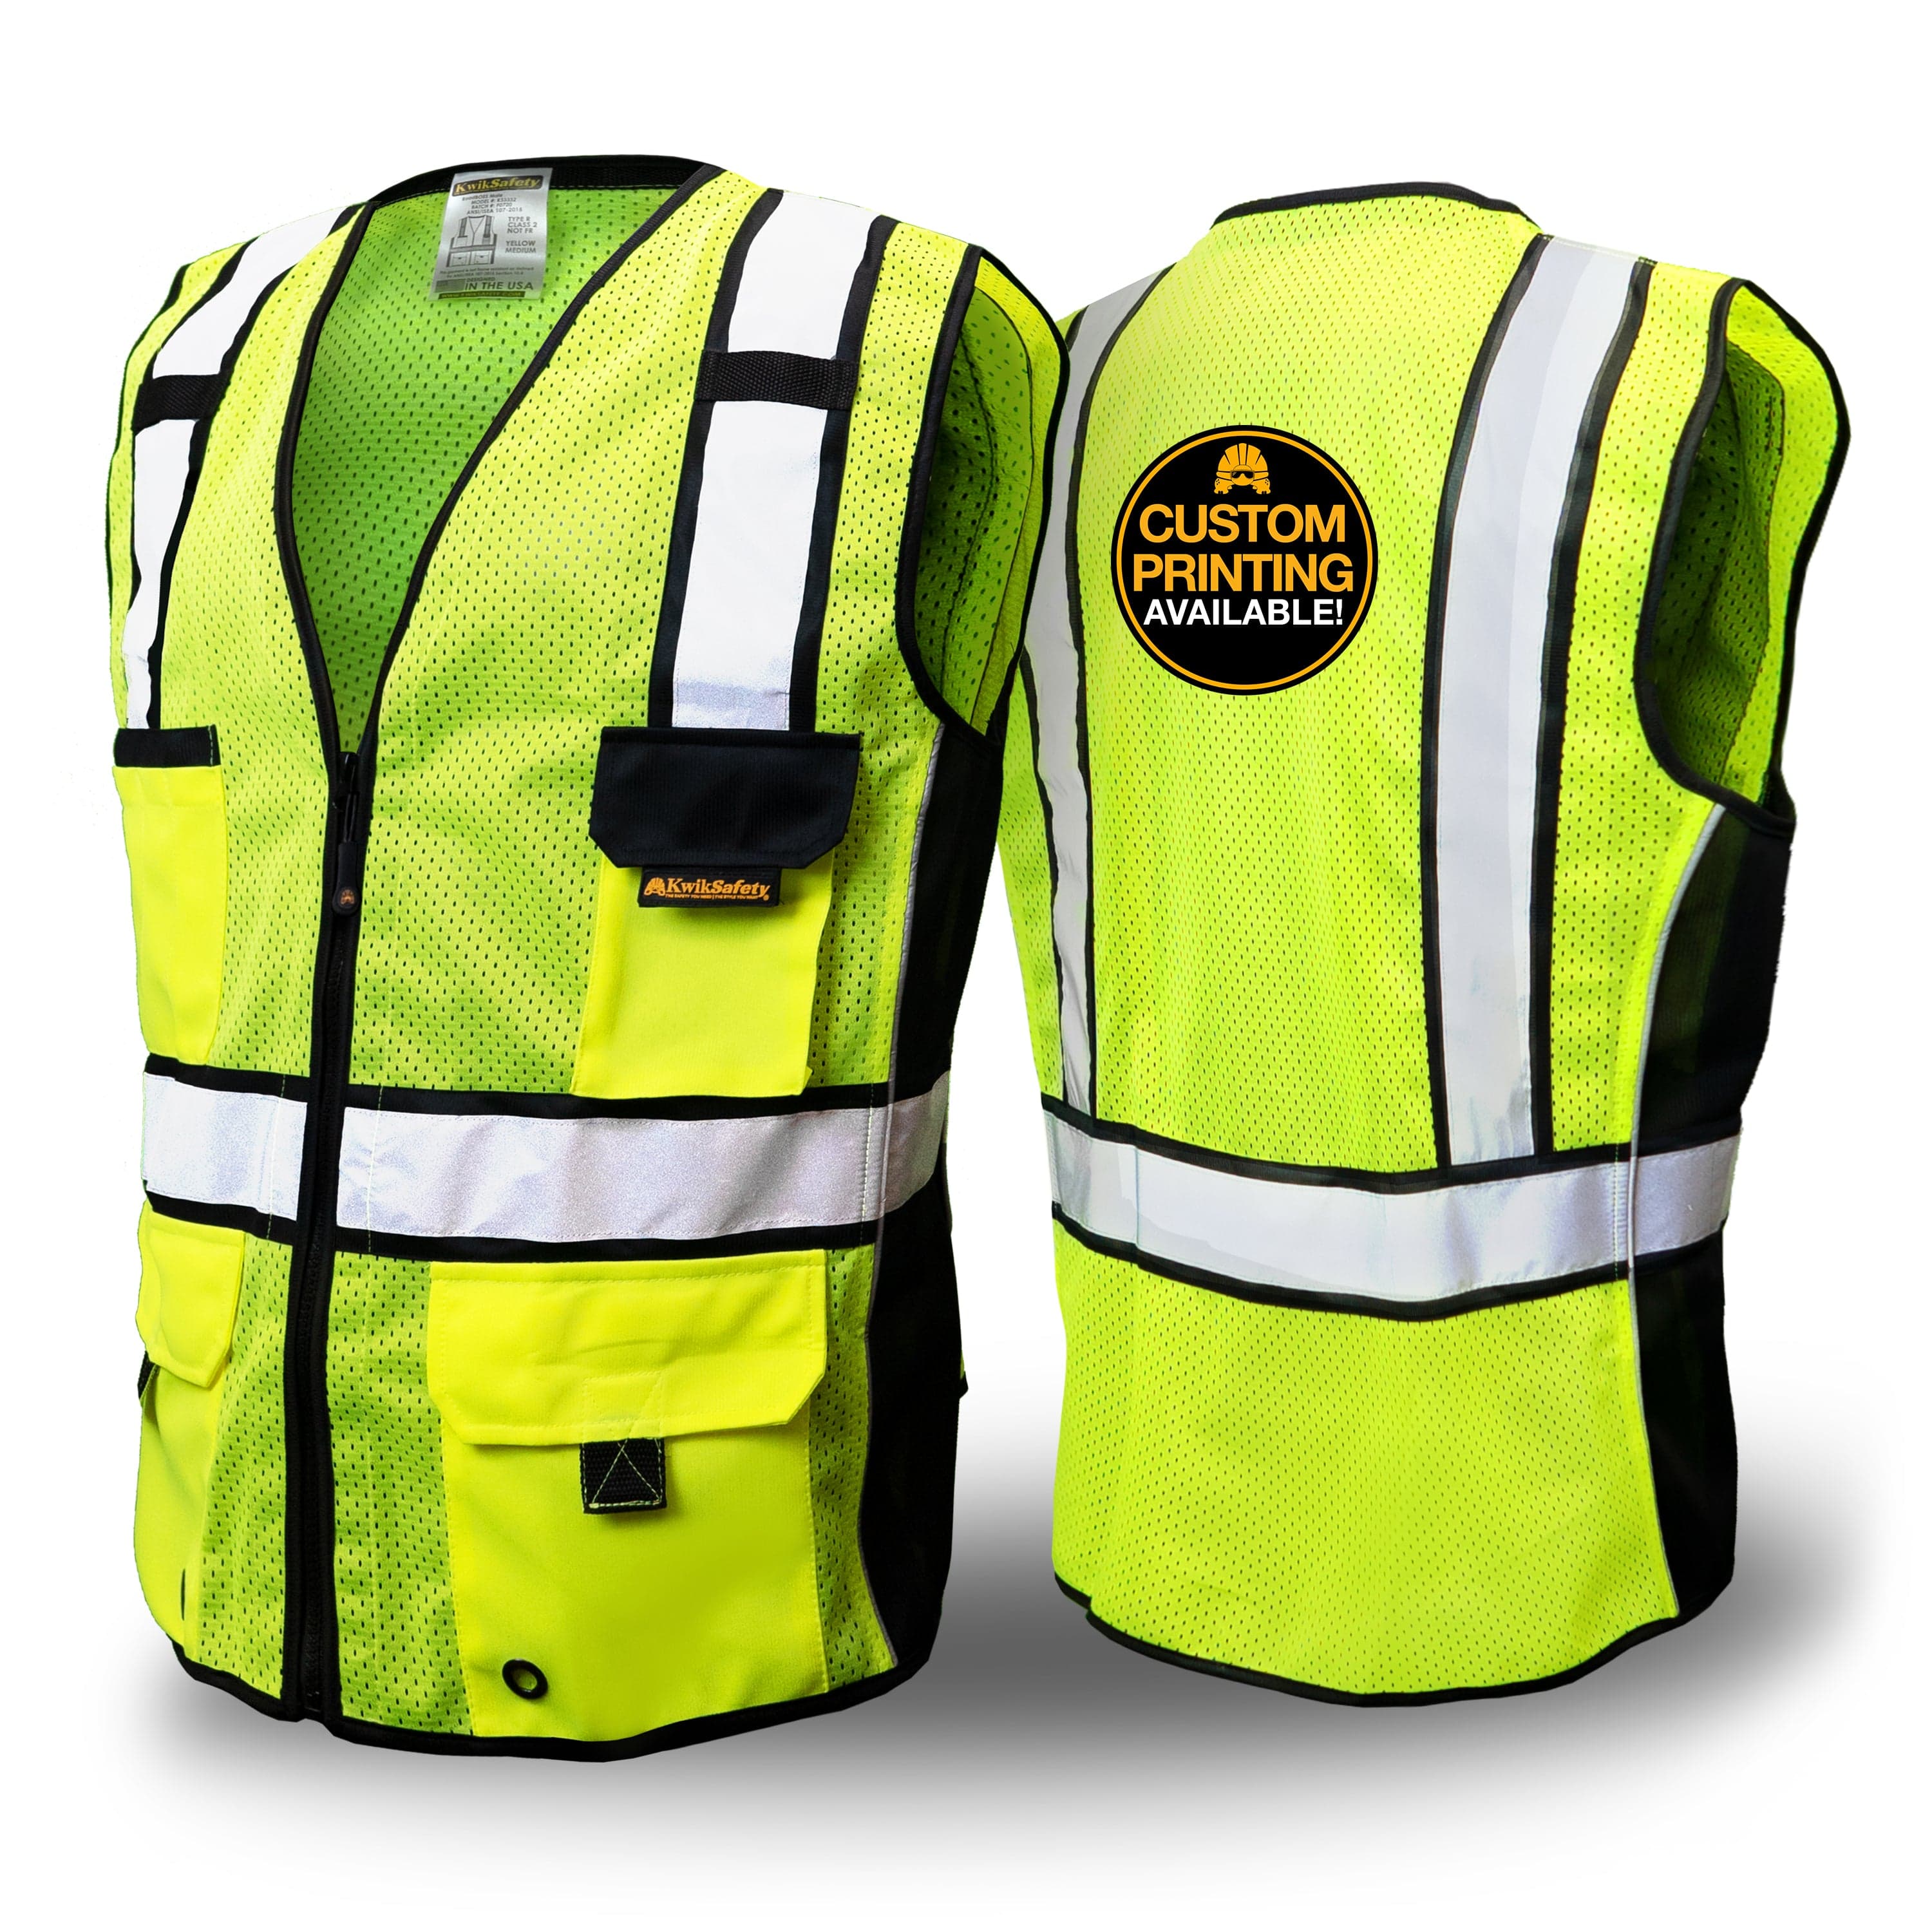 KwikSafety EXECUTIVE Safety Vest [10 Pockets] Class 3 ANSI Tested OSHA  Compliant Hi Vis Reflective PPE Surveyor - Model No.: KS3303